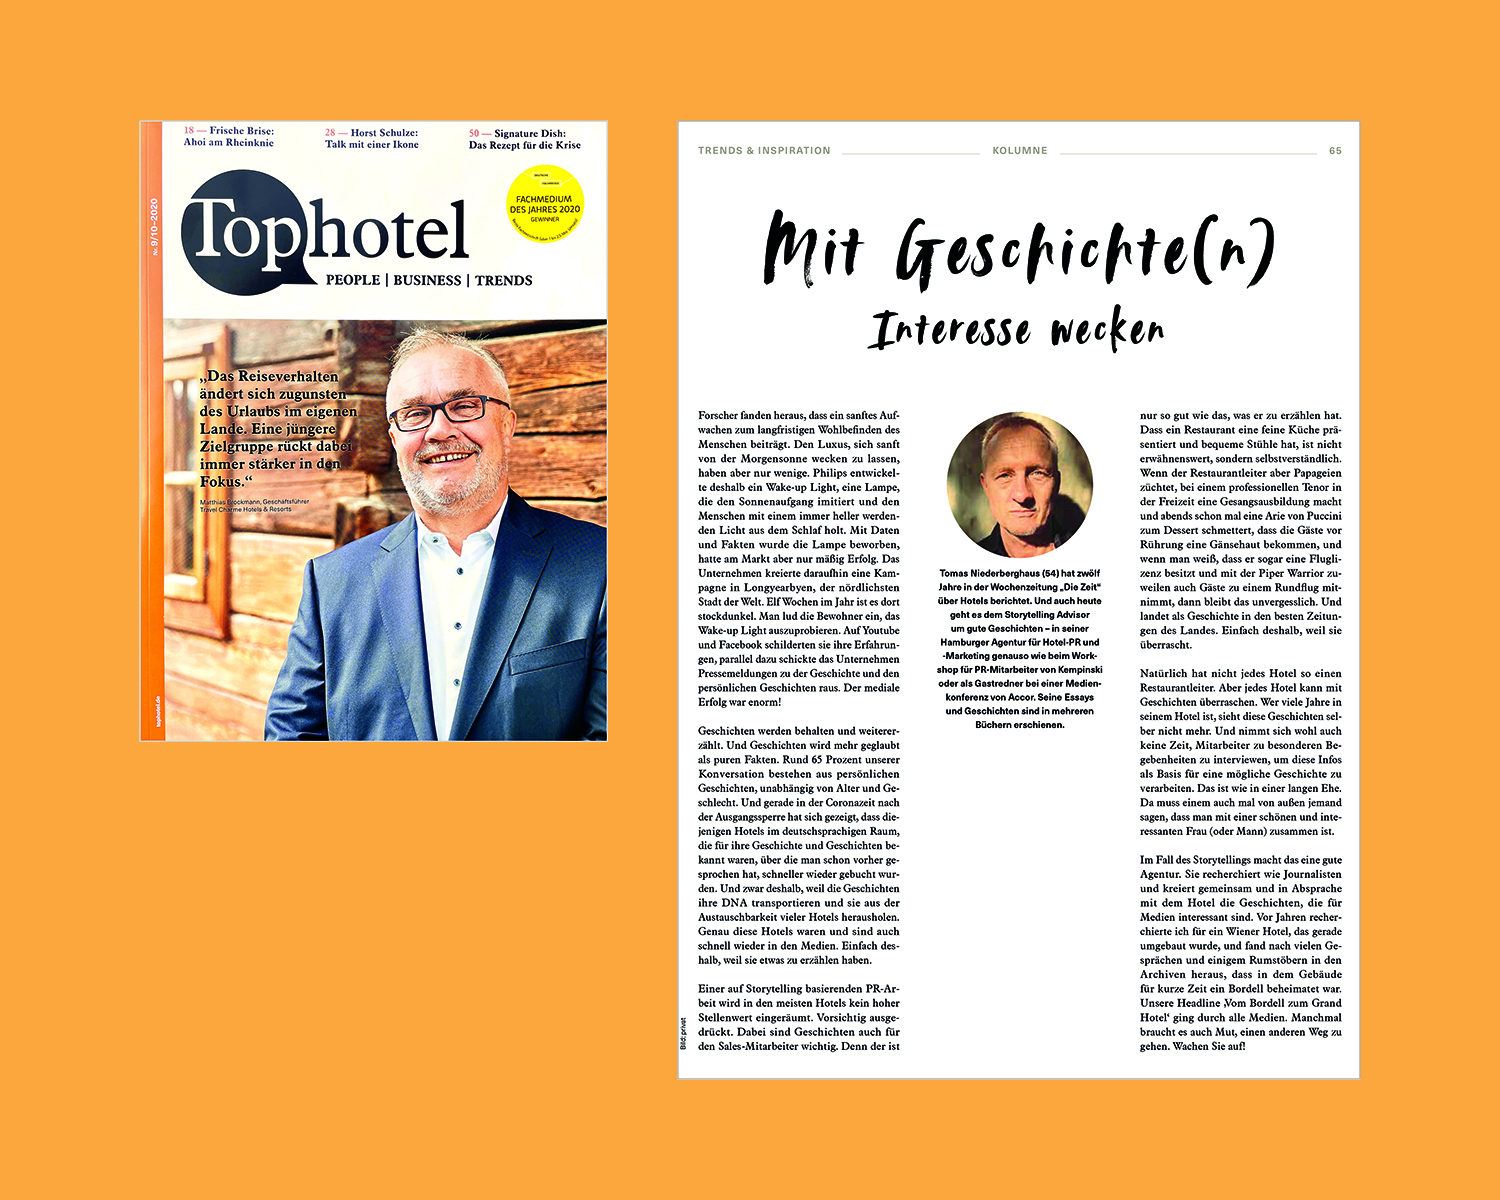 Tophotel_Ausgabe Oktober_2020_Mit Geschichten Interesse wecken_Kolumne_Tomas Niederberghaus, Hotel PR, Storytelling